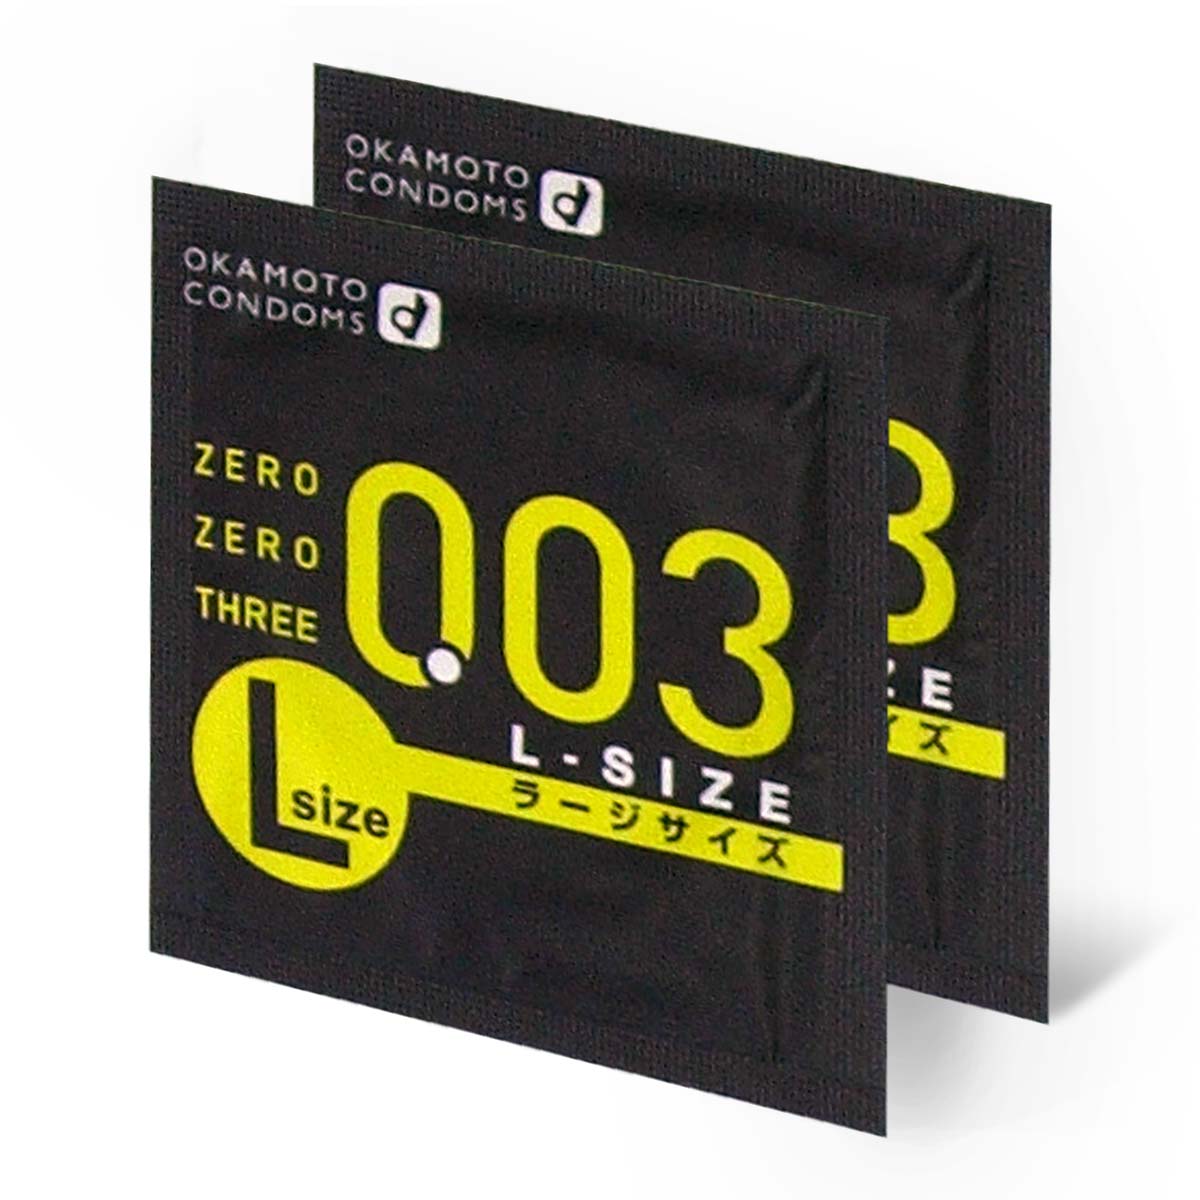 Zero Zero Three 0.03 L-size (Japan Edition) 58mm 2 pieces Latex Condom-p_1